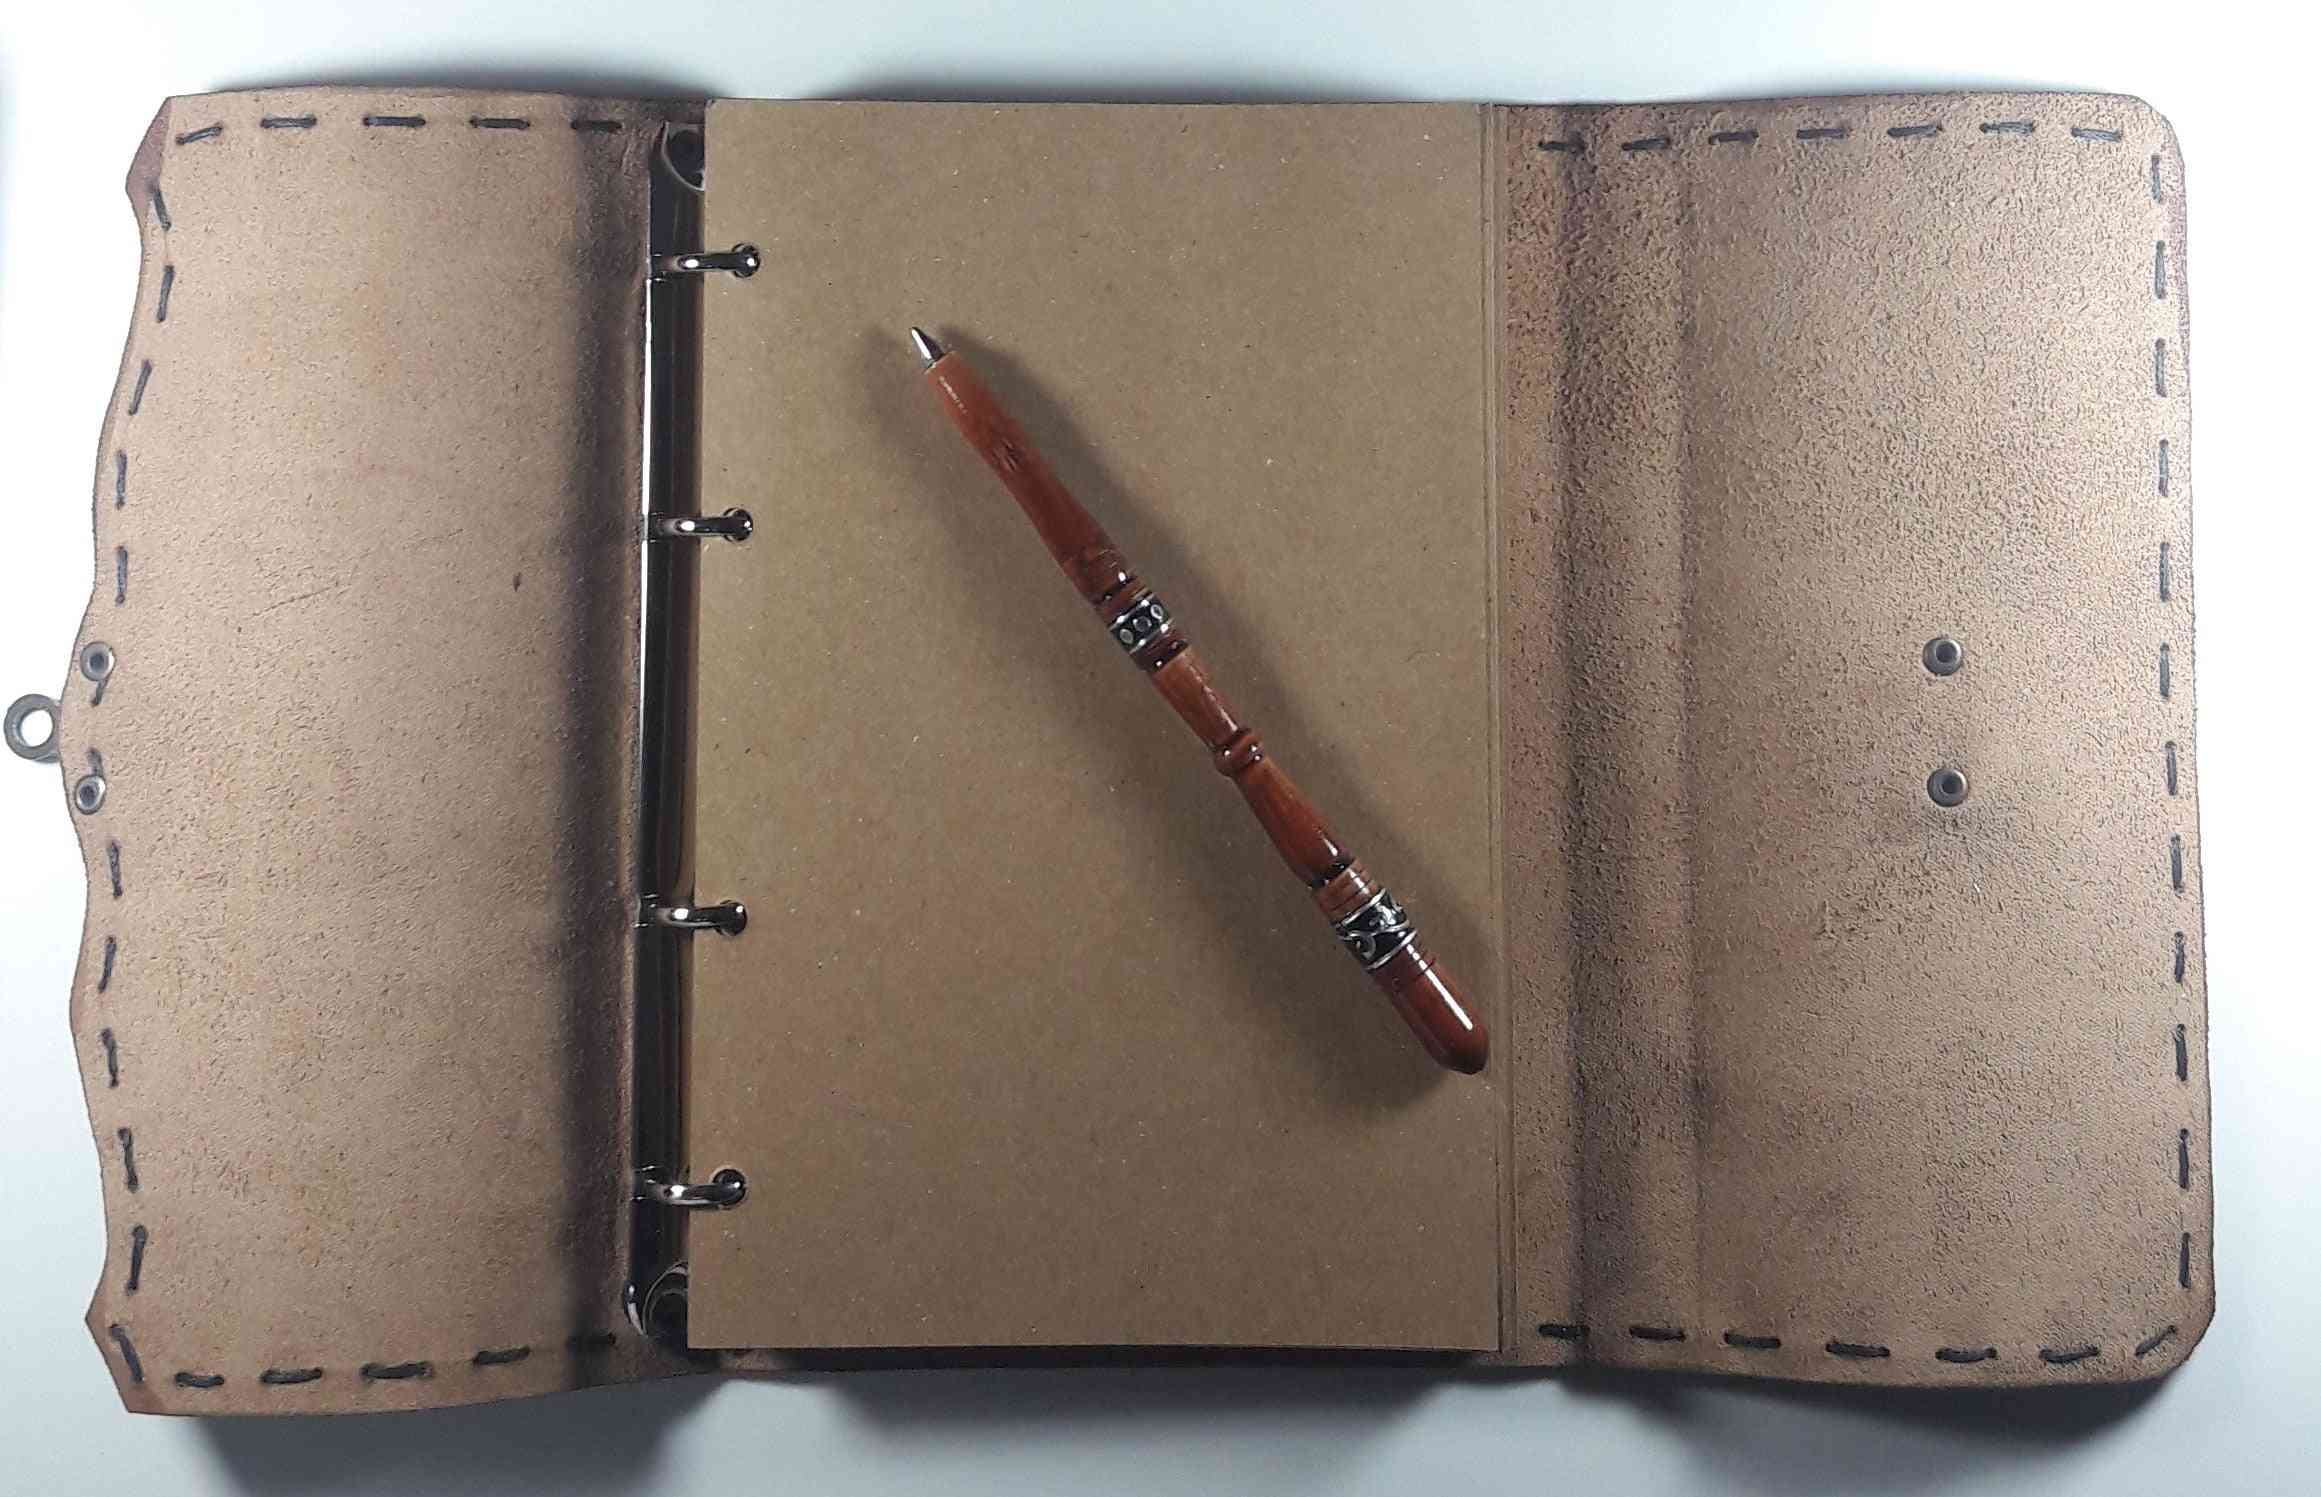 Handgjord anteckningsbok i äkta läder